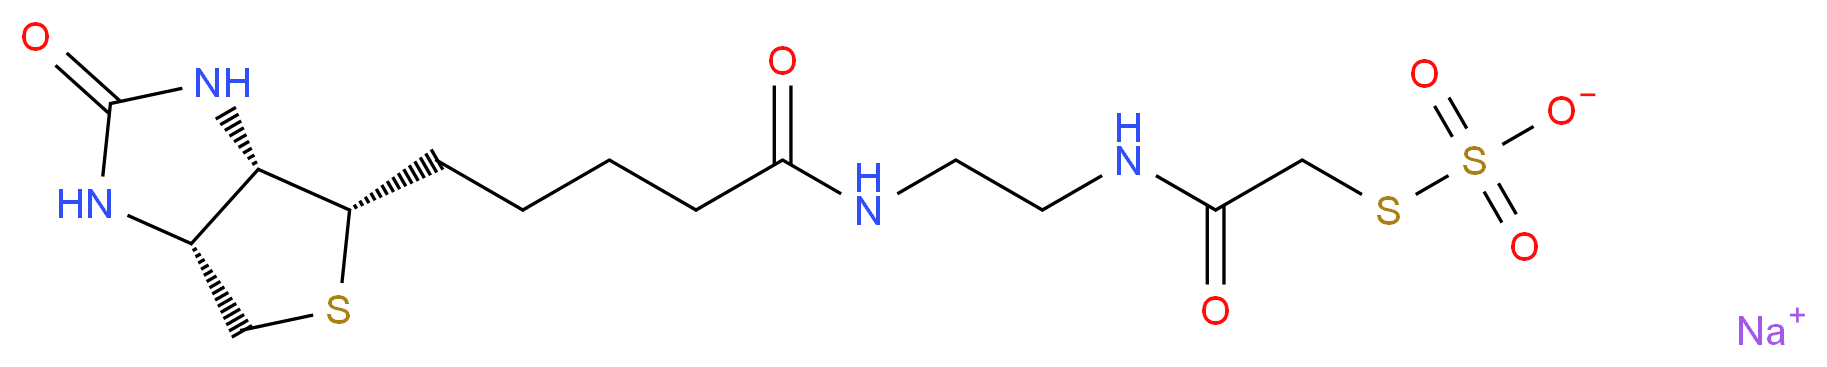 N-(2-Aminoethyl)-N'-(2-Sulfothioacetamid)biotinamide, Sodium Salt_分子结构_CAS_)